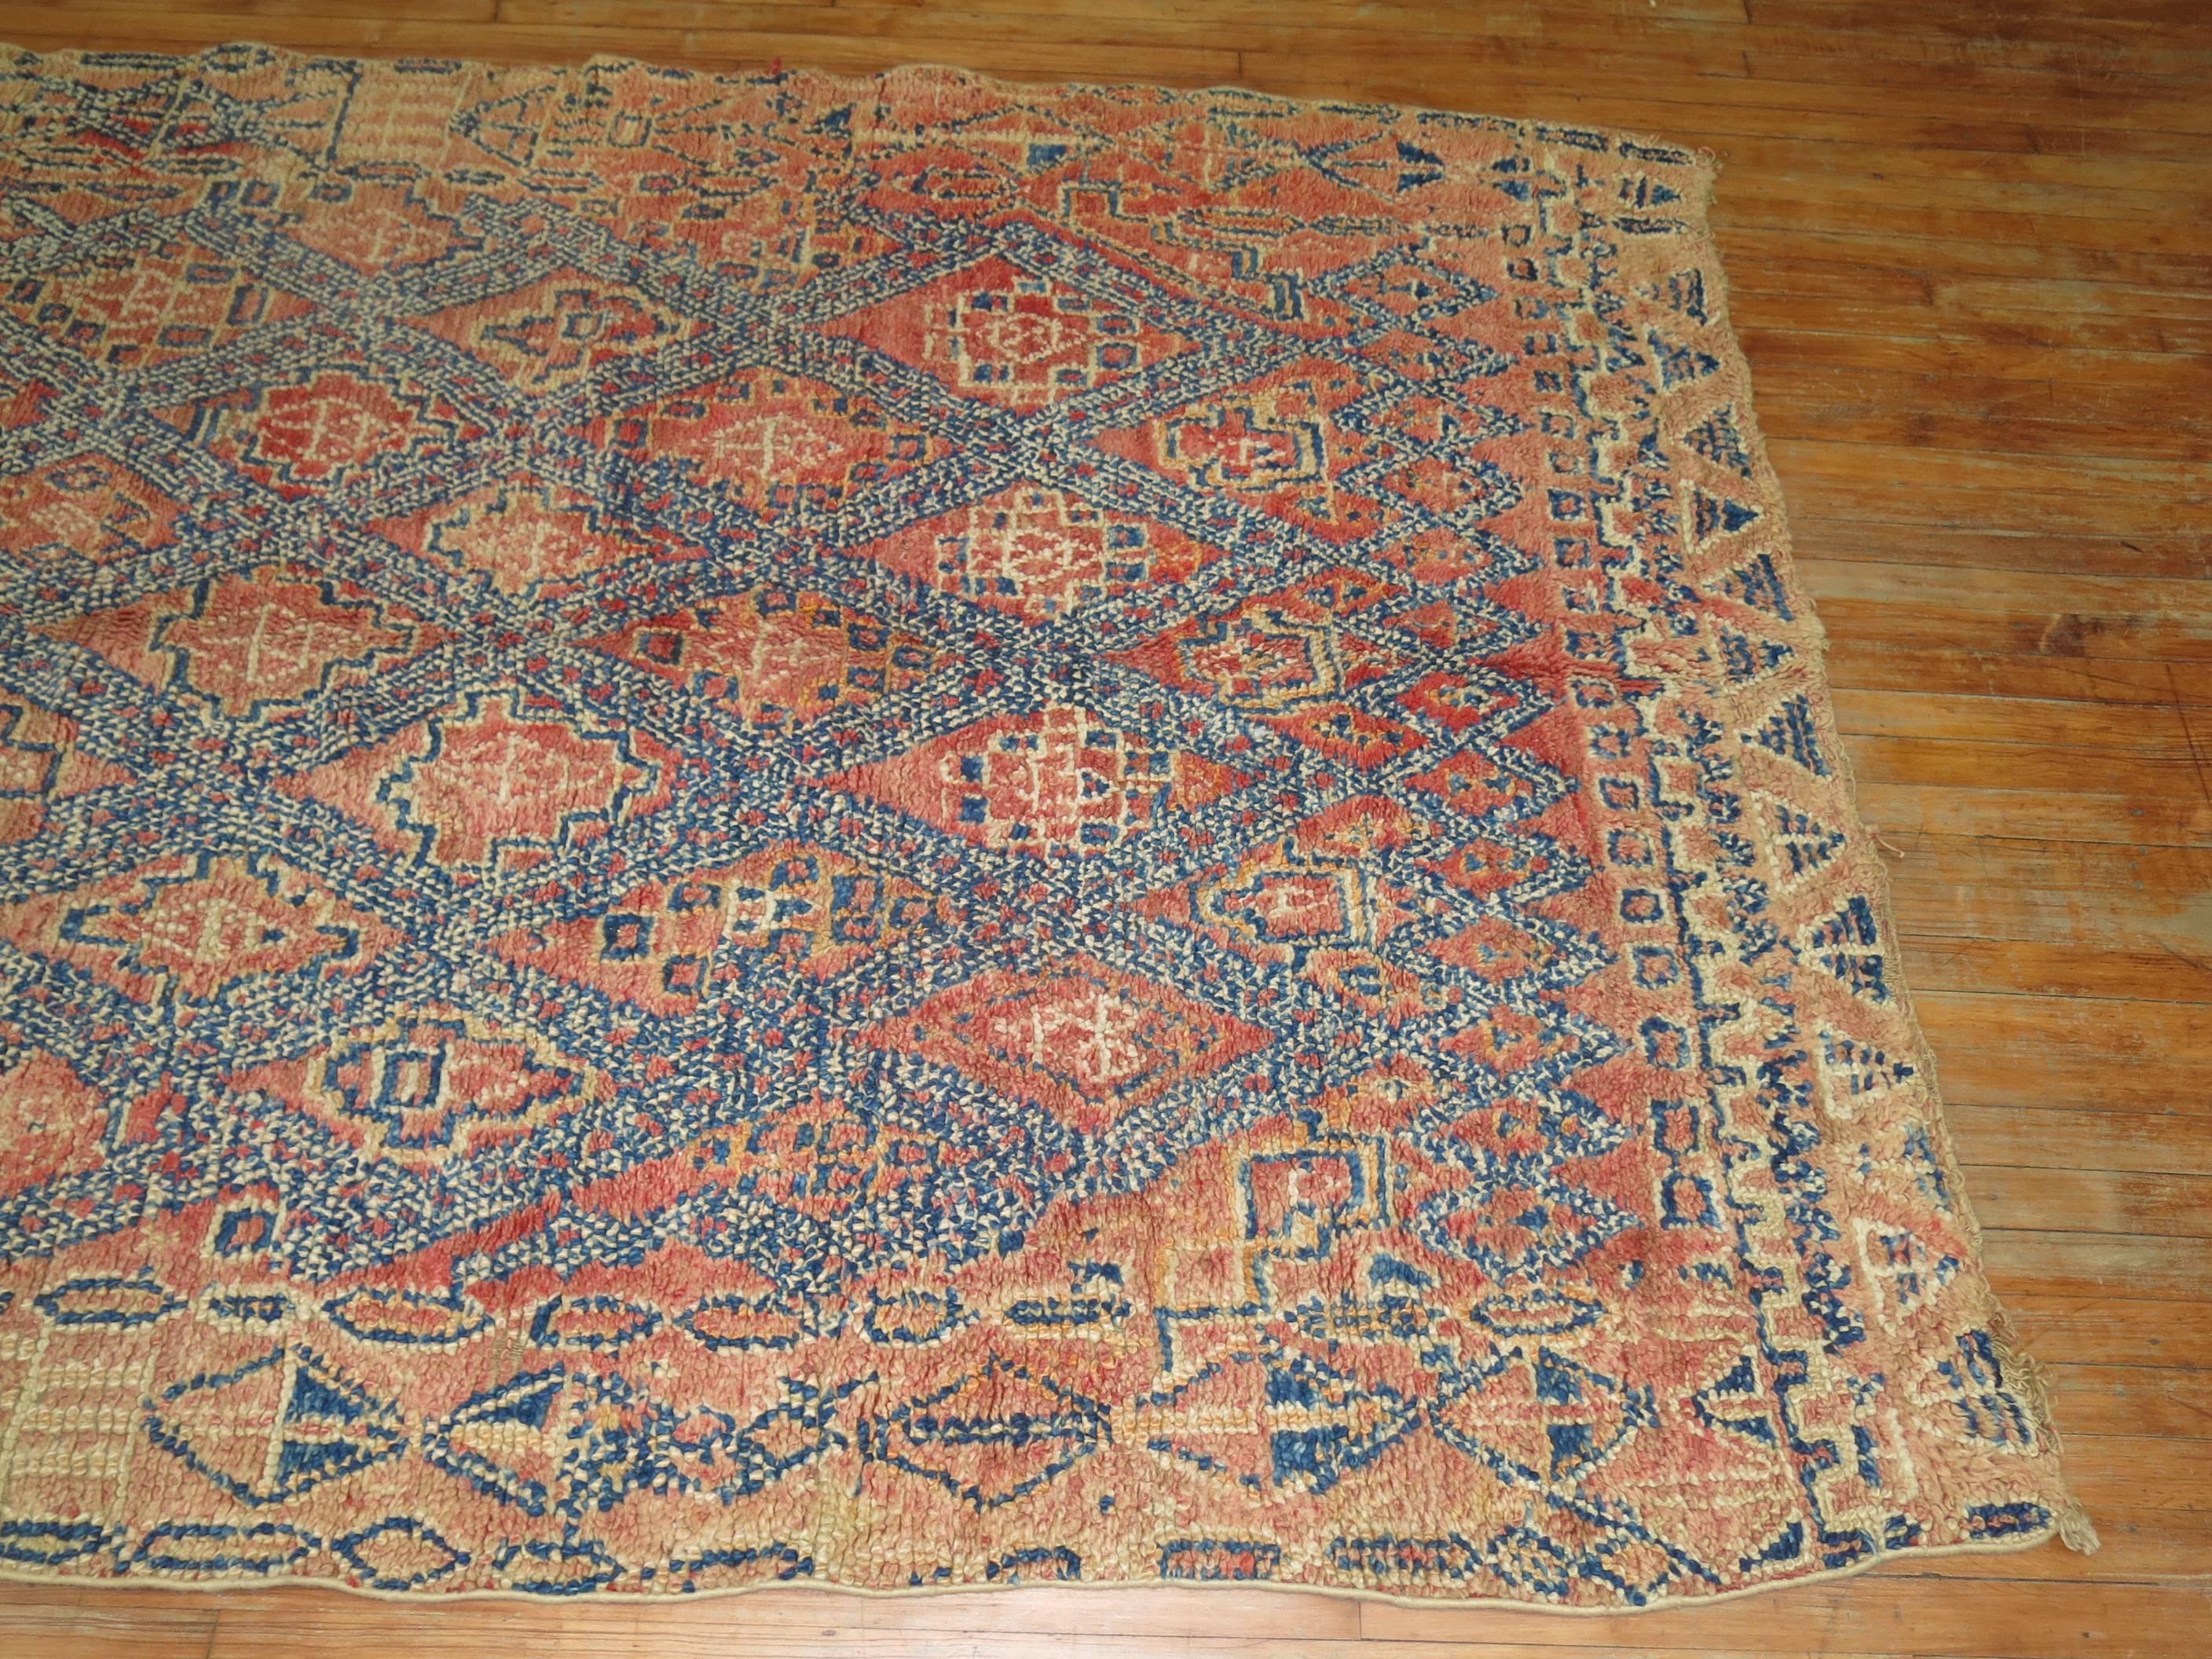 Primitive Antique Moroccan Rug